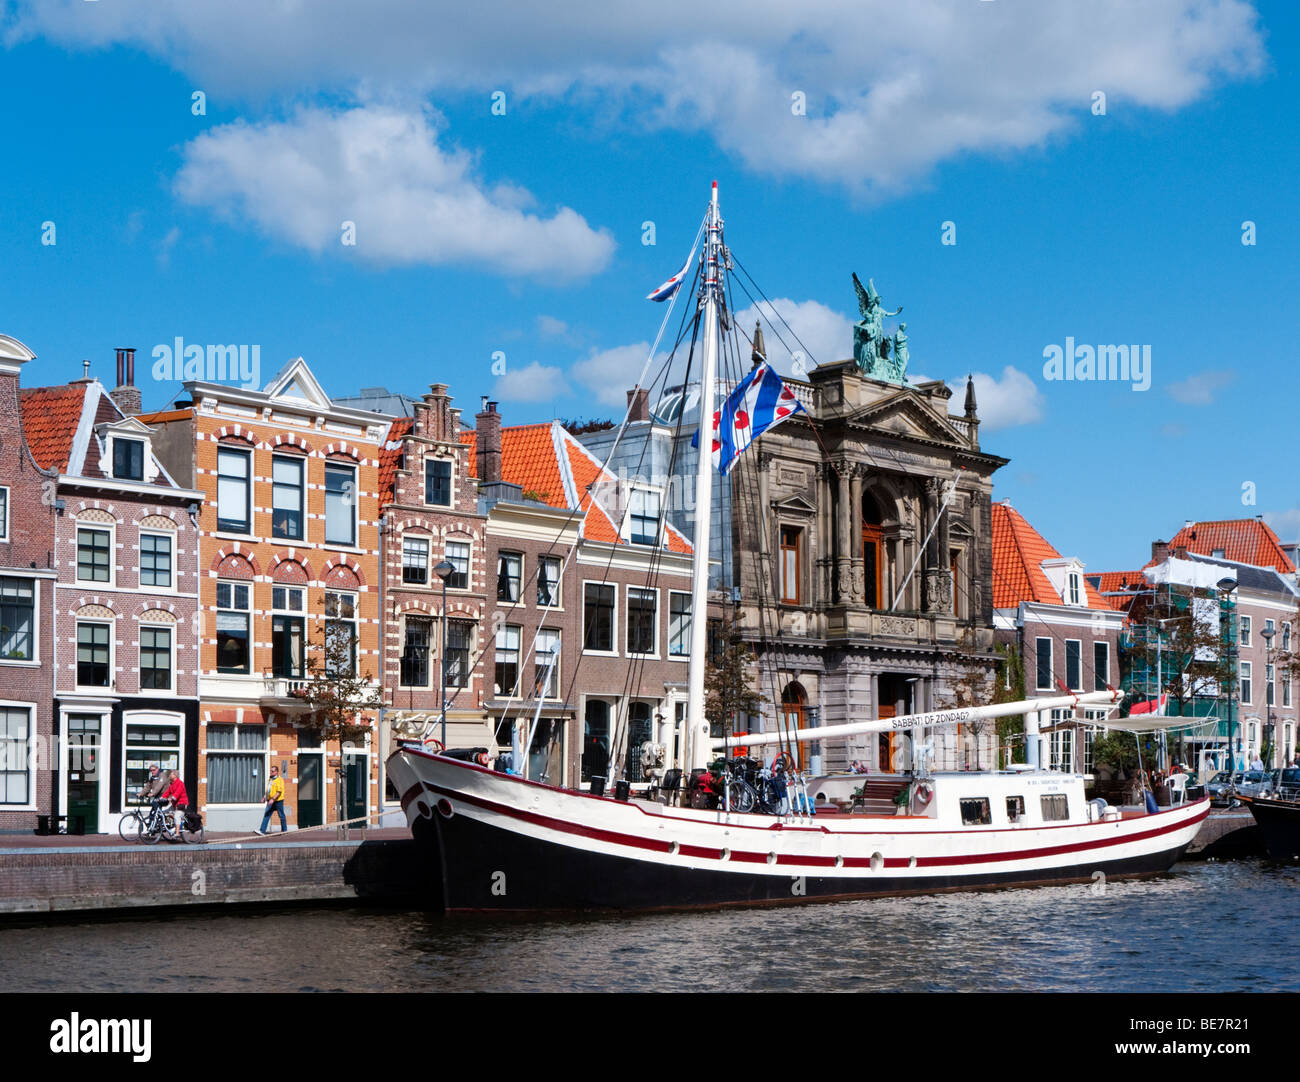 Bateau amarré sur la rivière Spaarne et maisons historiques dans Haarlem Pays-Bas Banque D'Images